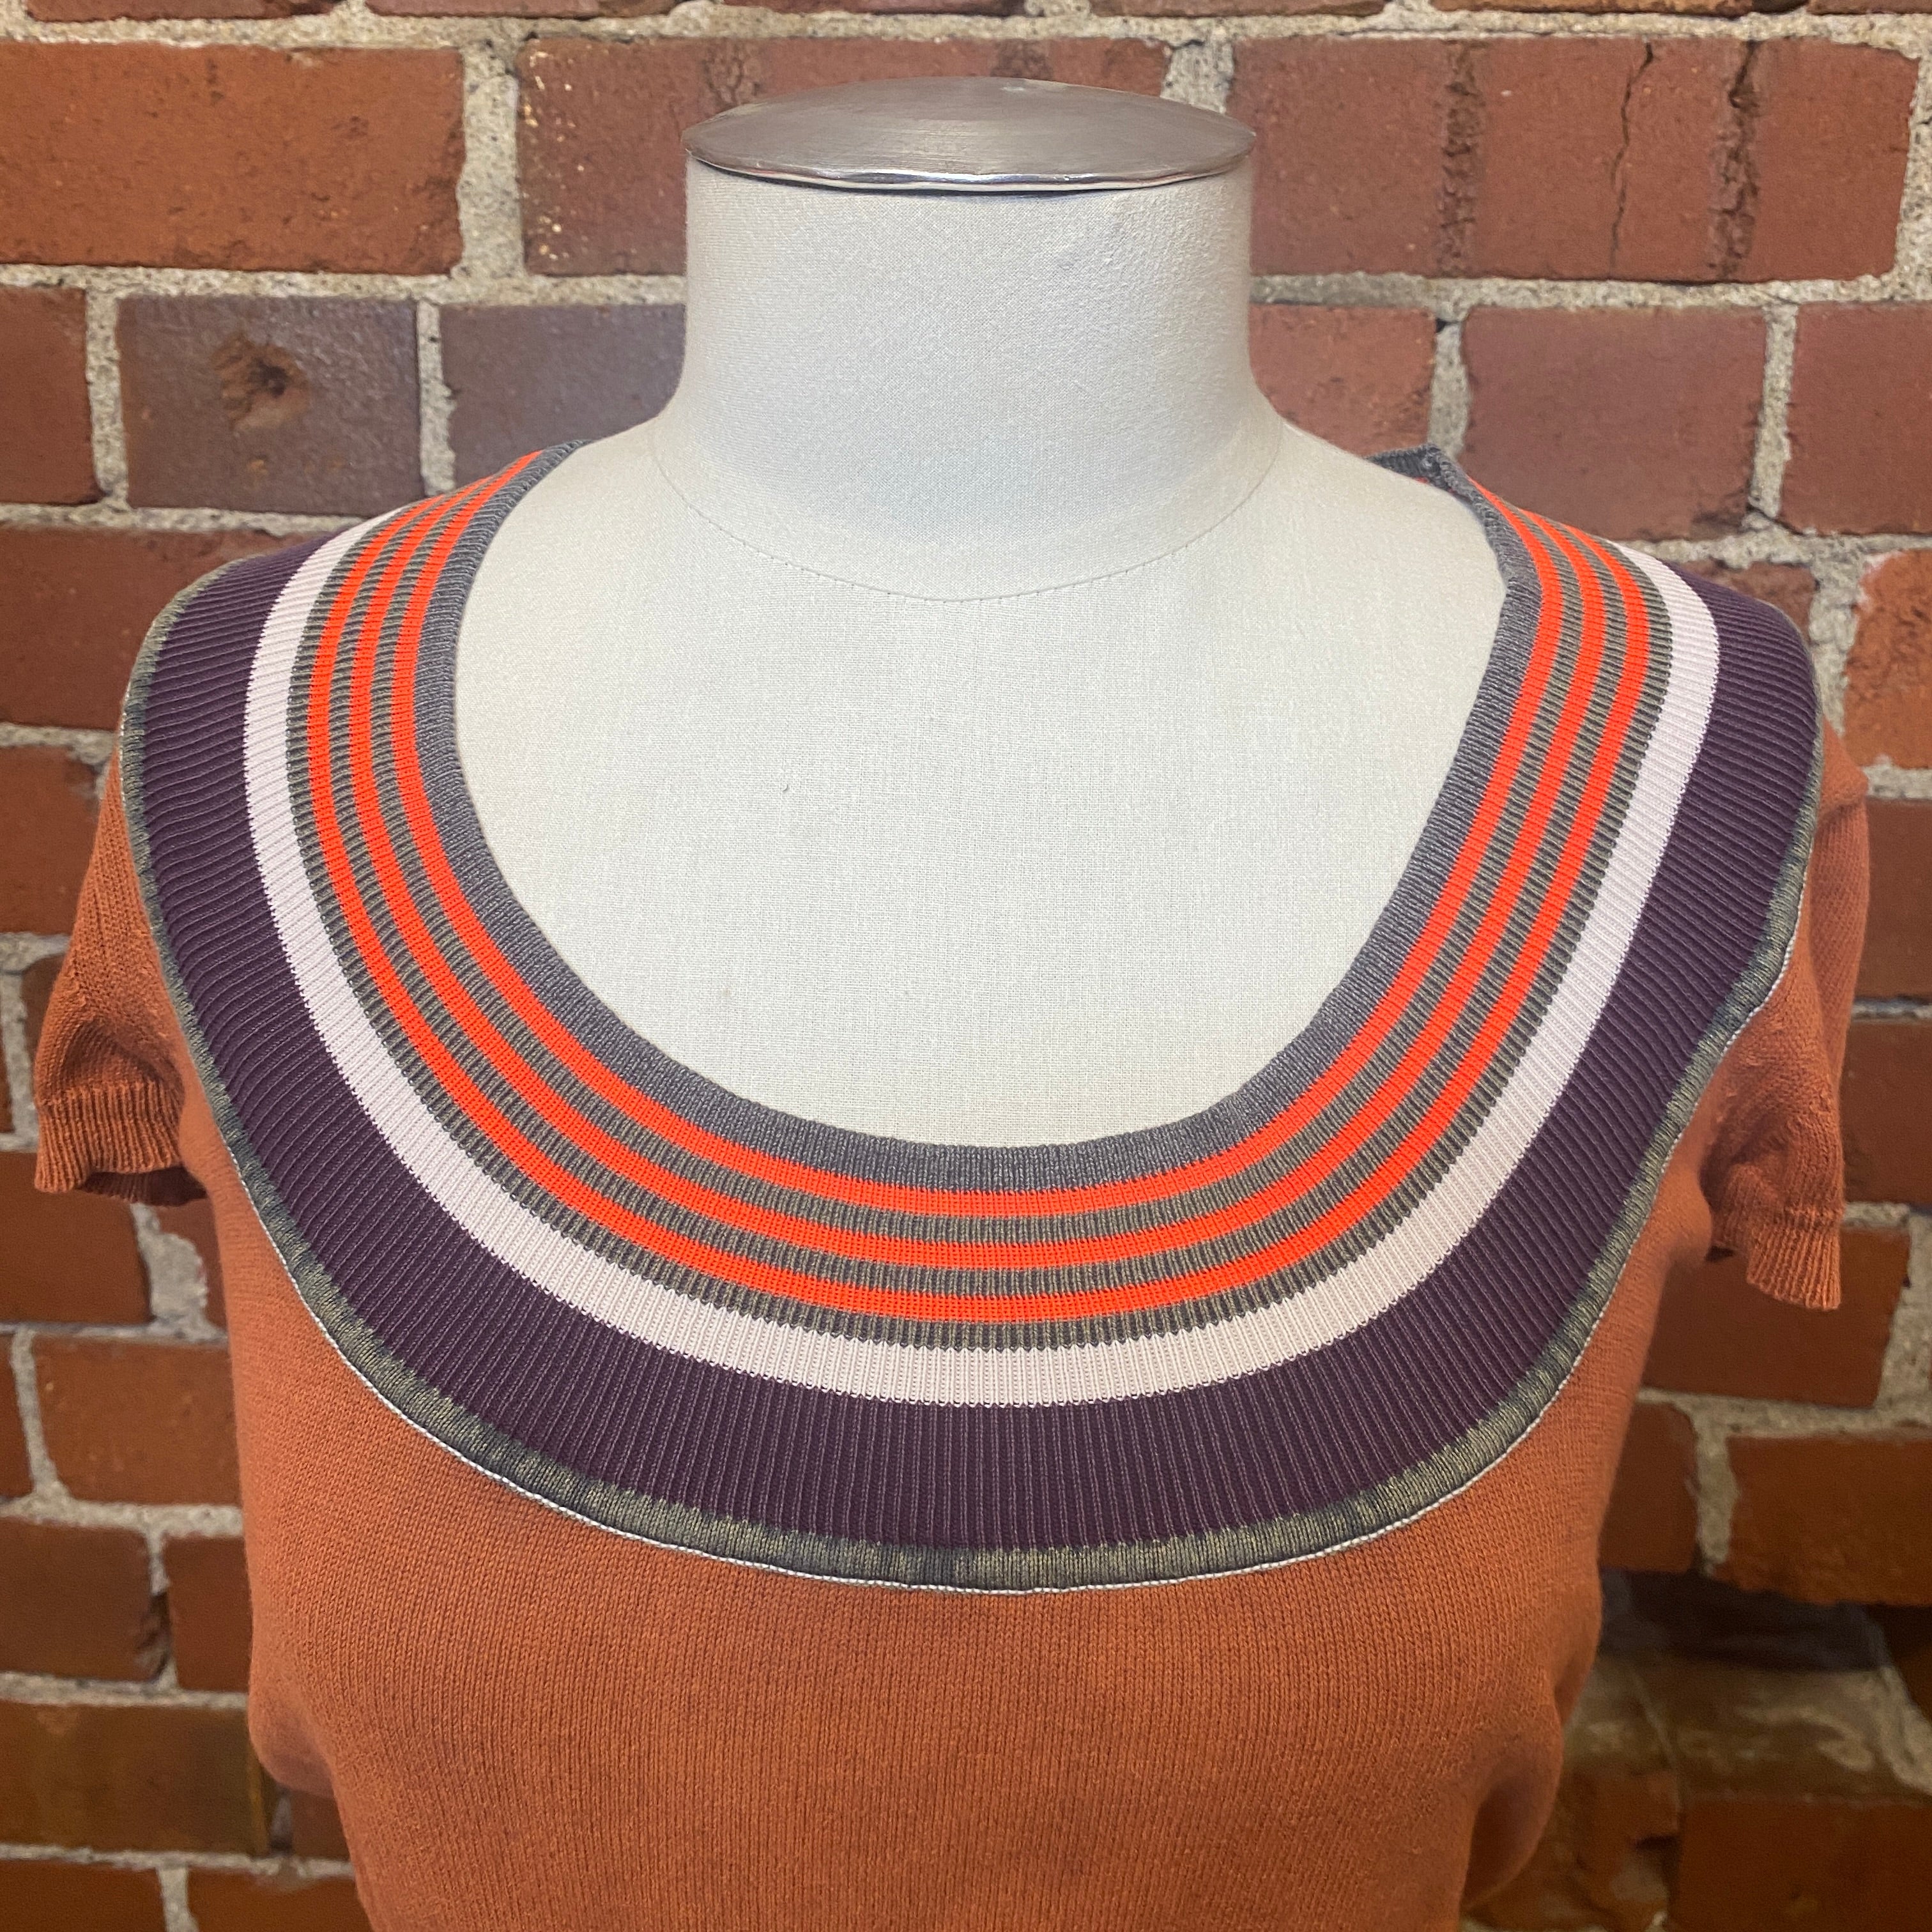 VIVIENNE WESTWOOD cotton knit top